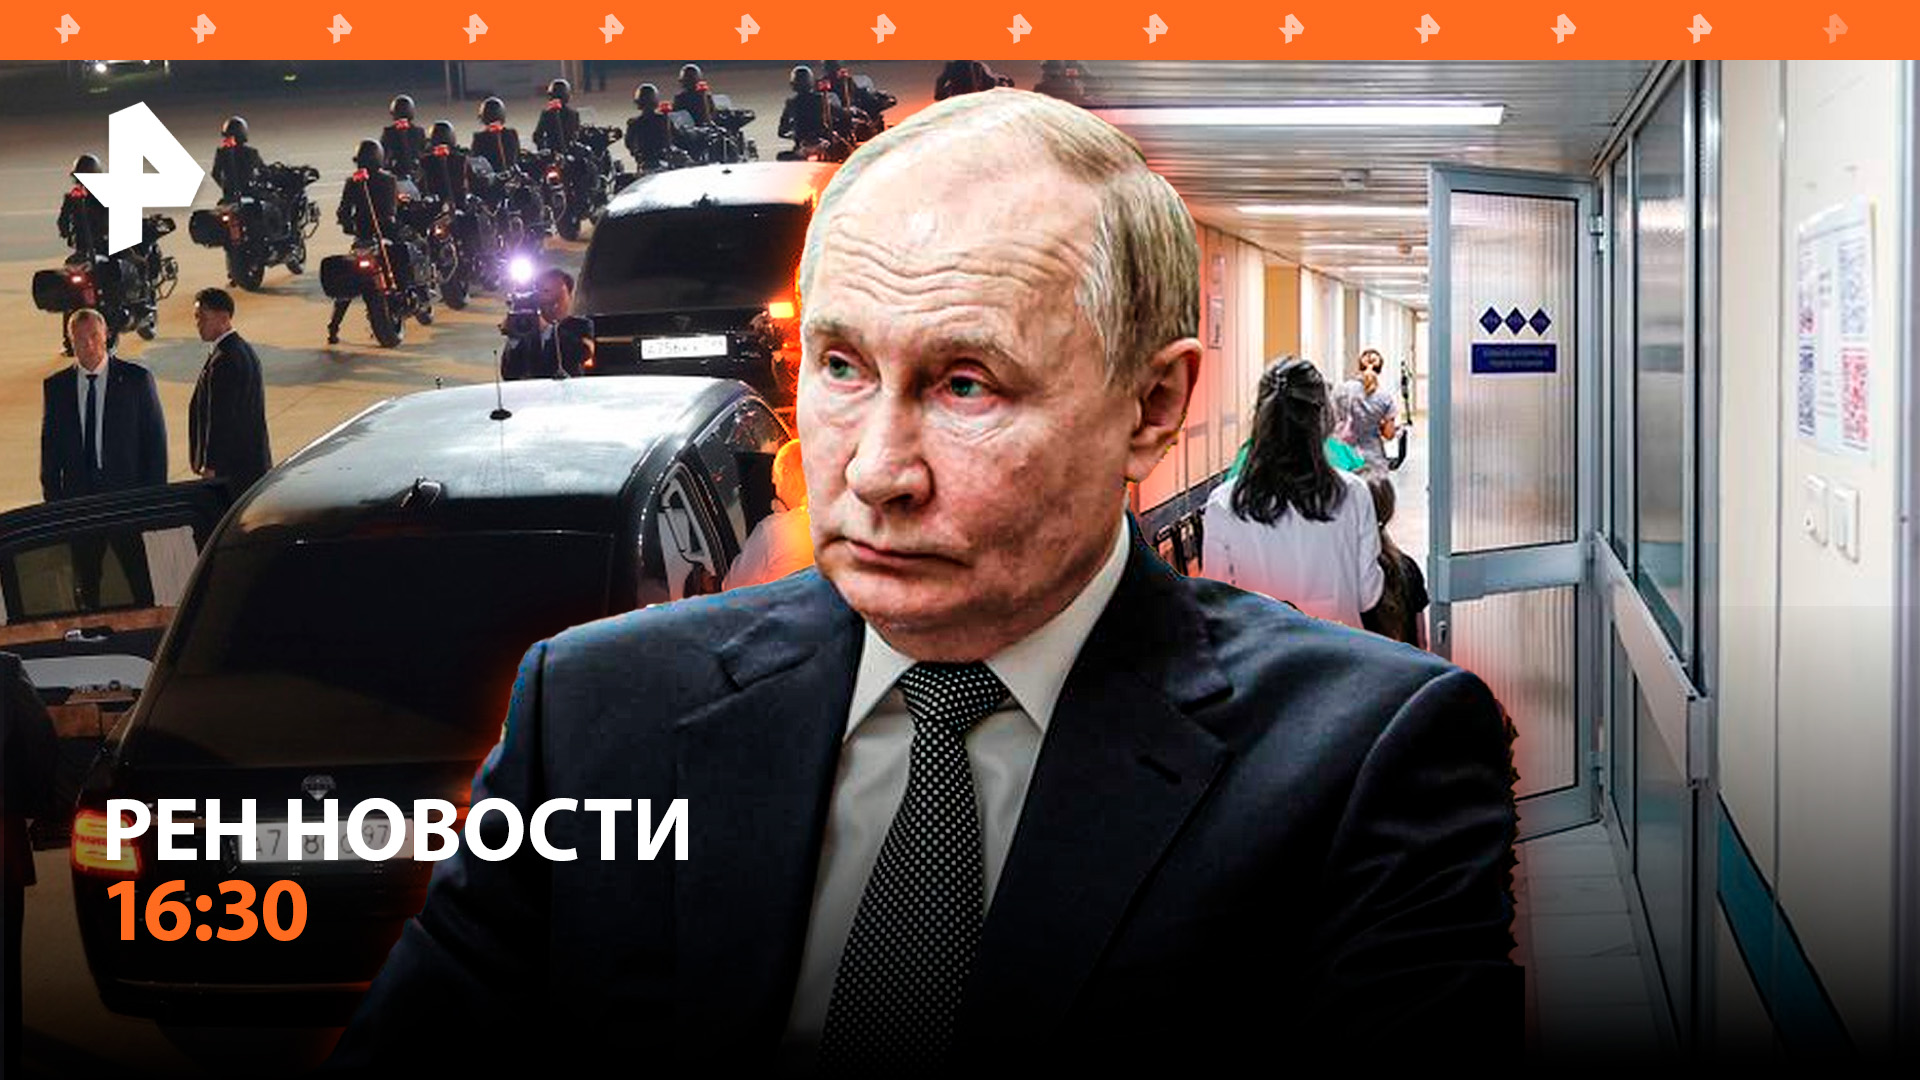 Путин рулит в КНДР: поездка на Aurus и первые итоги визита / Новая "черная дыра" / РЕН Новости 16:30